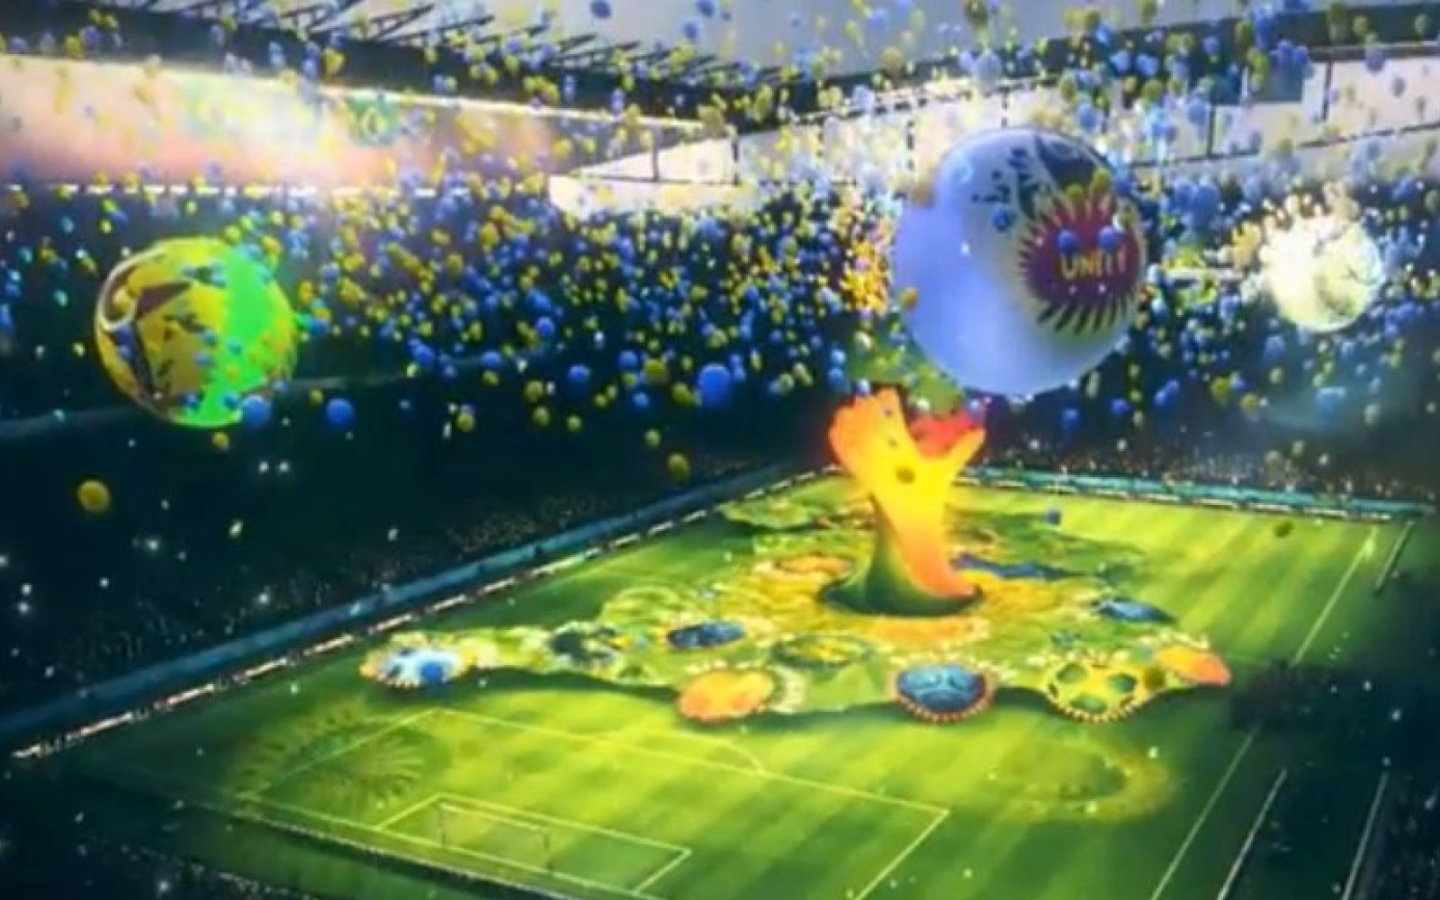 Церемония открытия на Чемпионате мира по футболу в Бразилии 2014